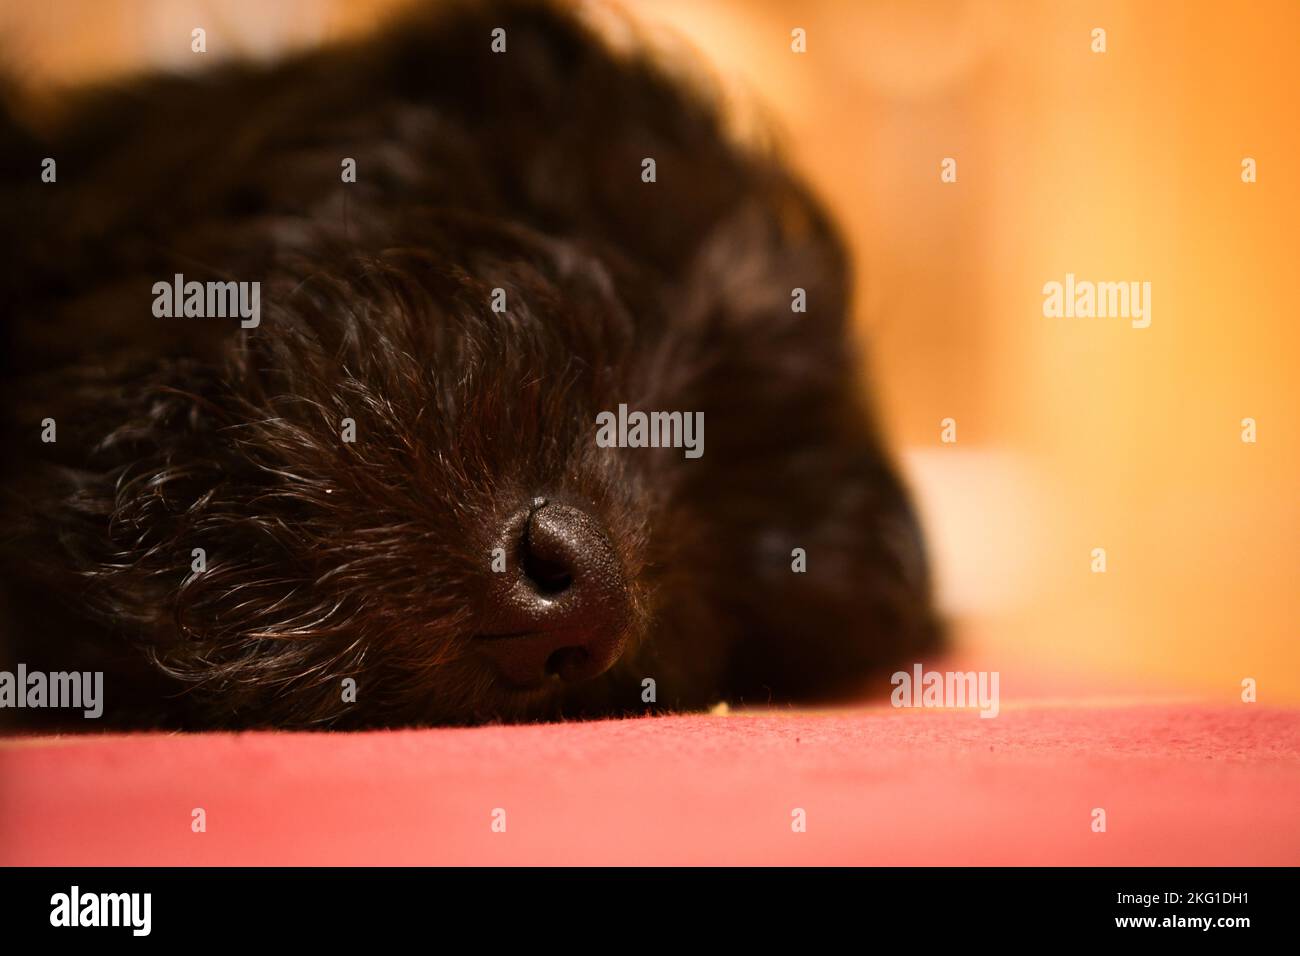 Goldendoodle Welpen schlafen. Die Nase ist im Fokus, der Rest verschwommen. Hybridhund, der keine Allergie gegen Tierschleier verursacht. Schwarzer und brauner Mantel. Stockfoto